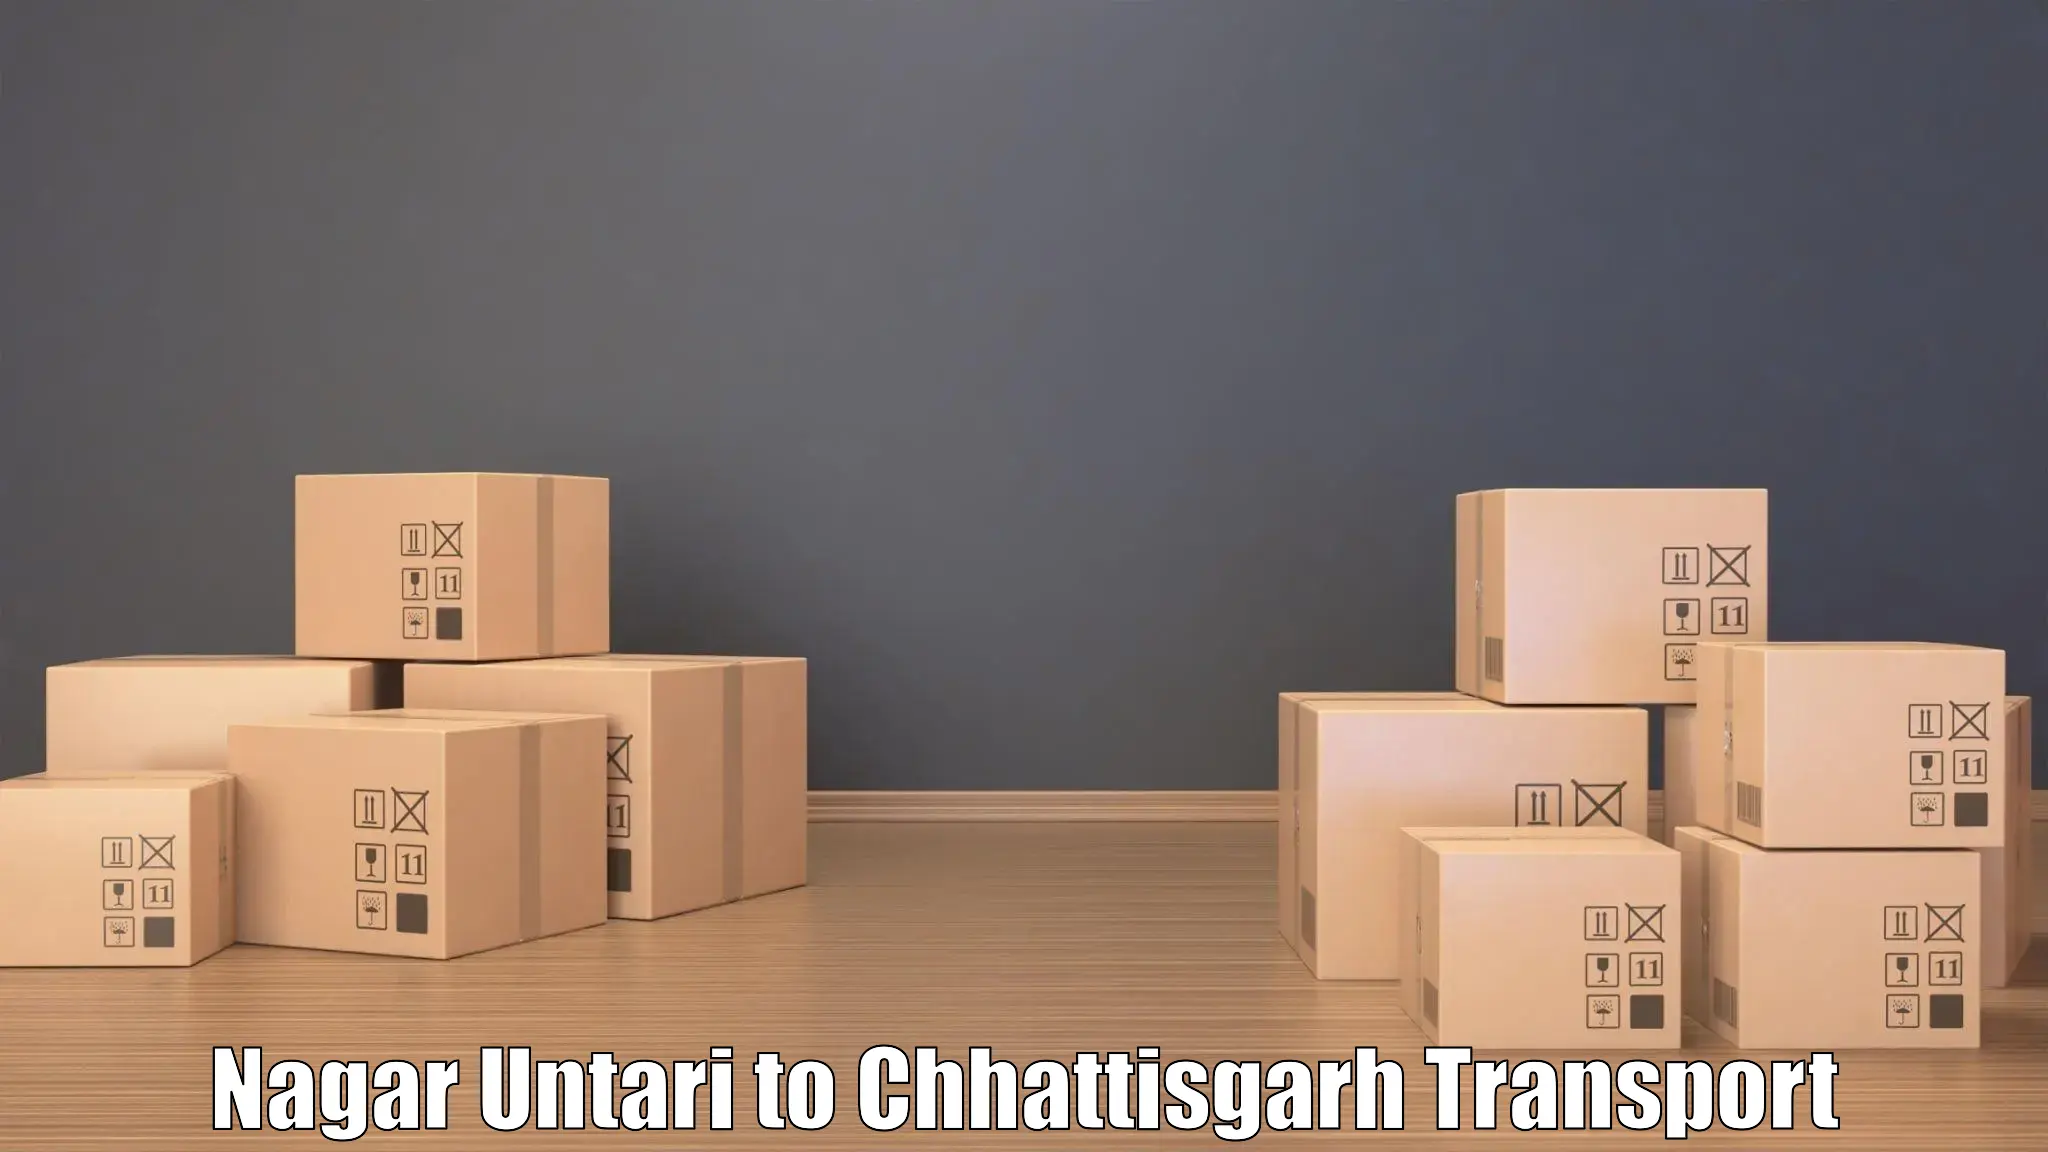 Land transport services in Nagar Untari to Mungeli